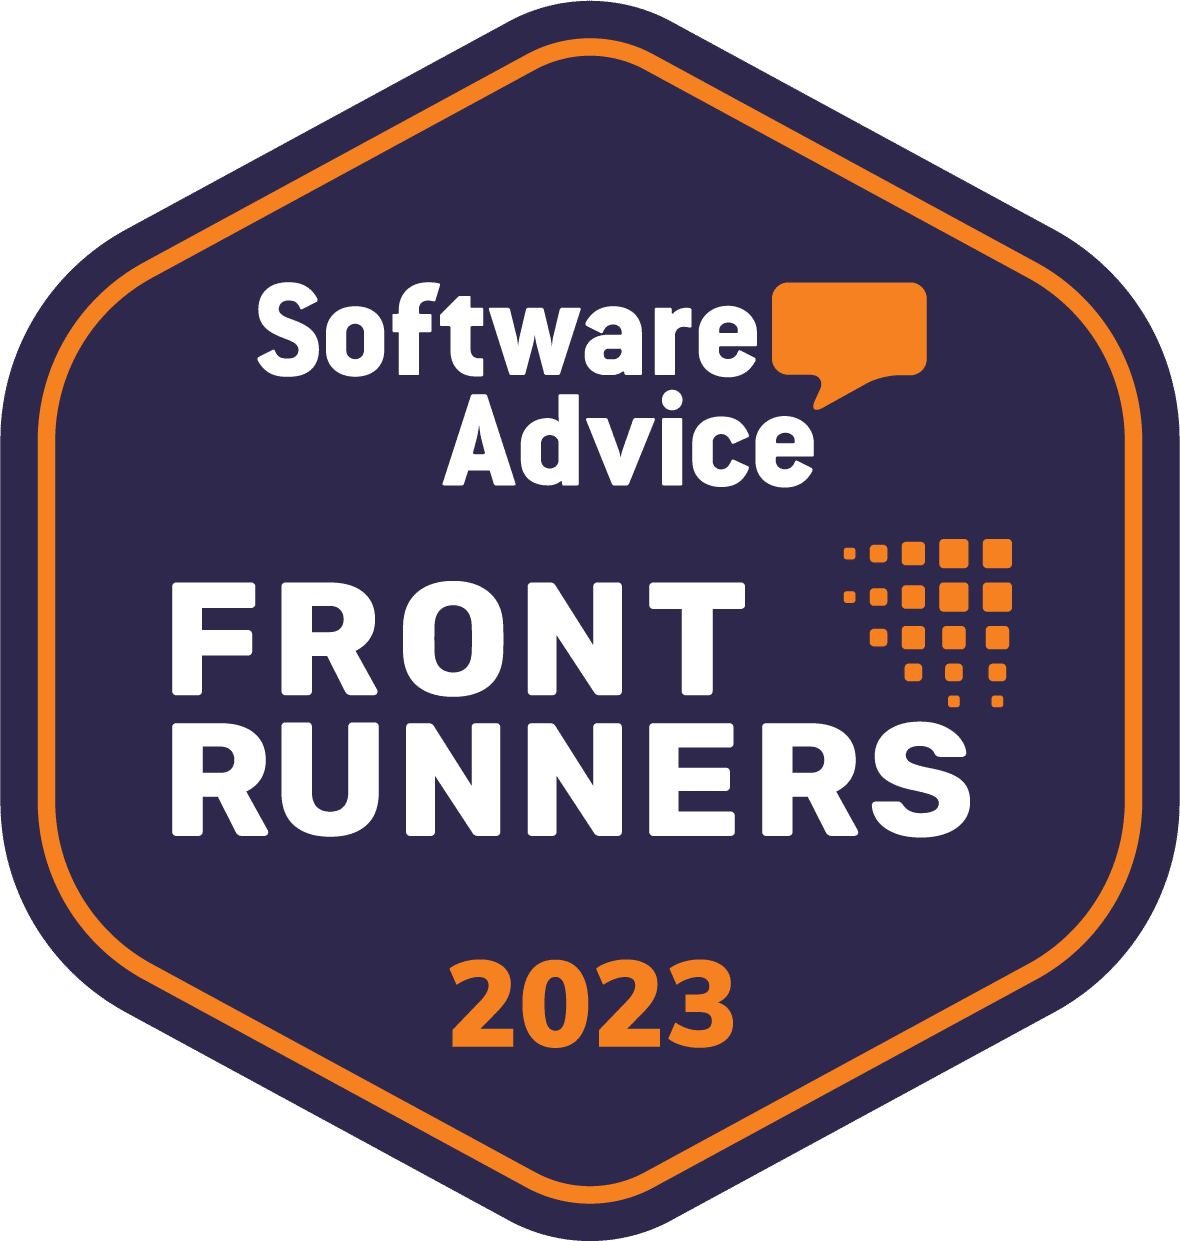 Capterra software advice award